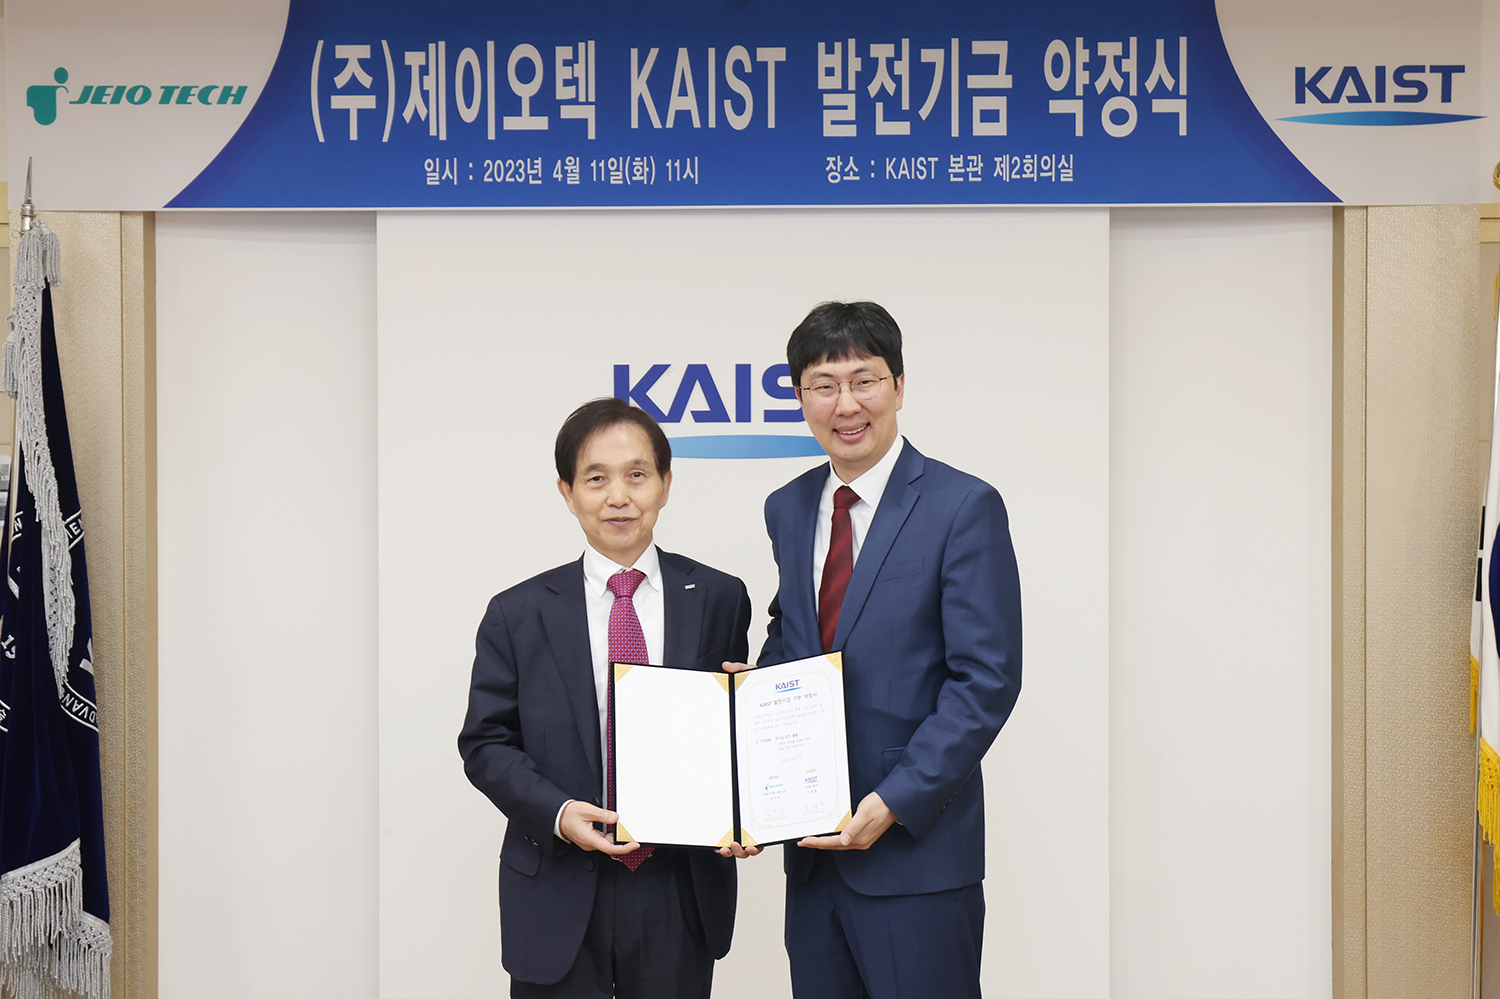 KAIST 이광형 총장과 연구실 안전물품 장비를 기부한 동문기업인(주)제이오텍 김기성 대표